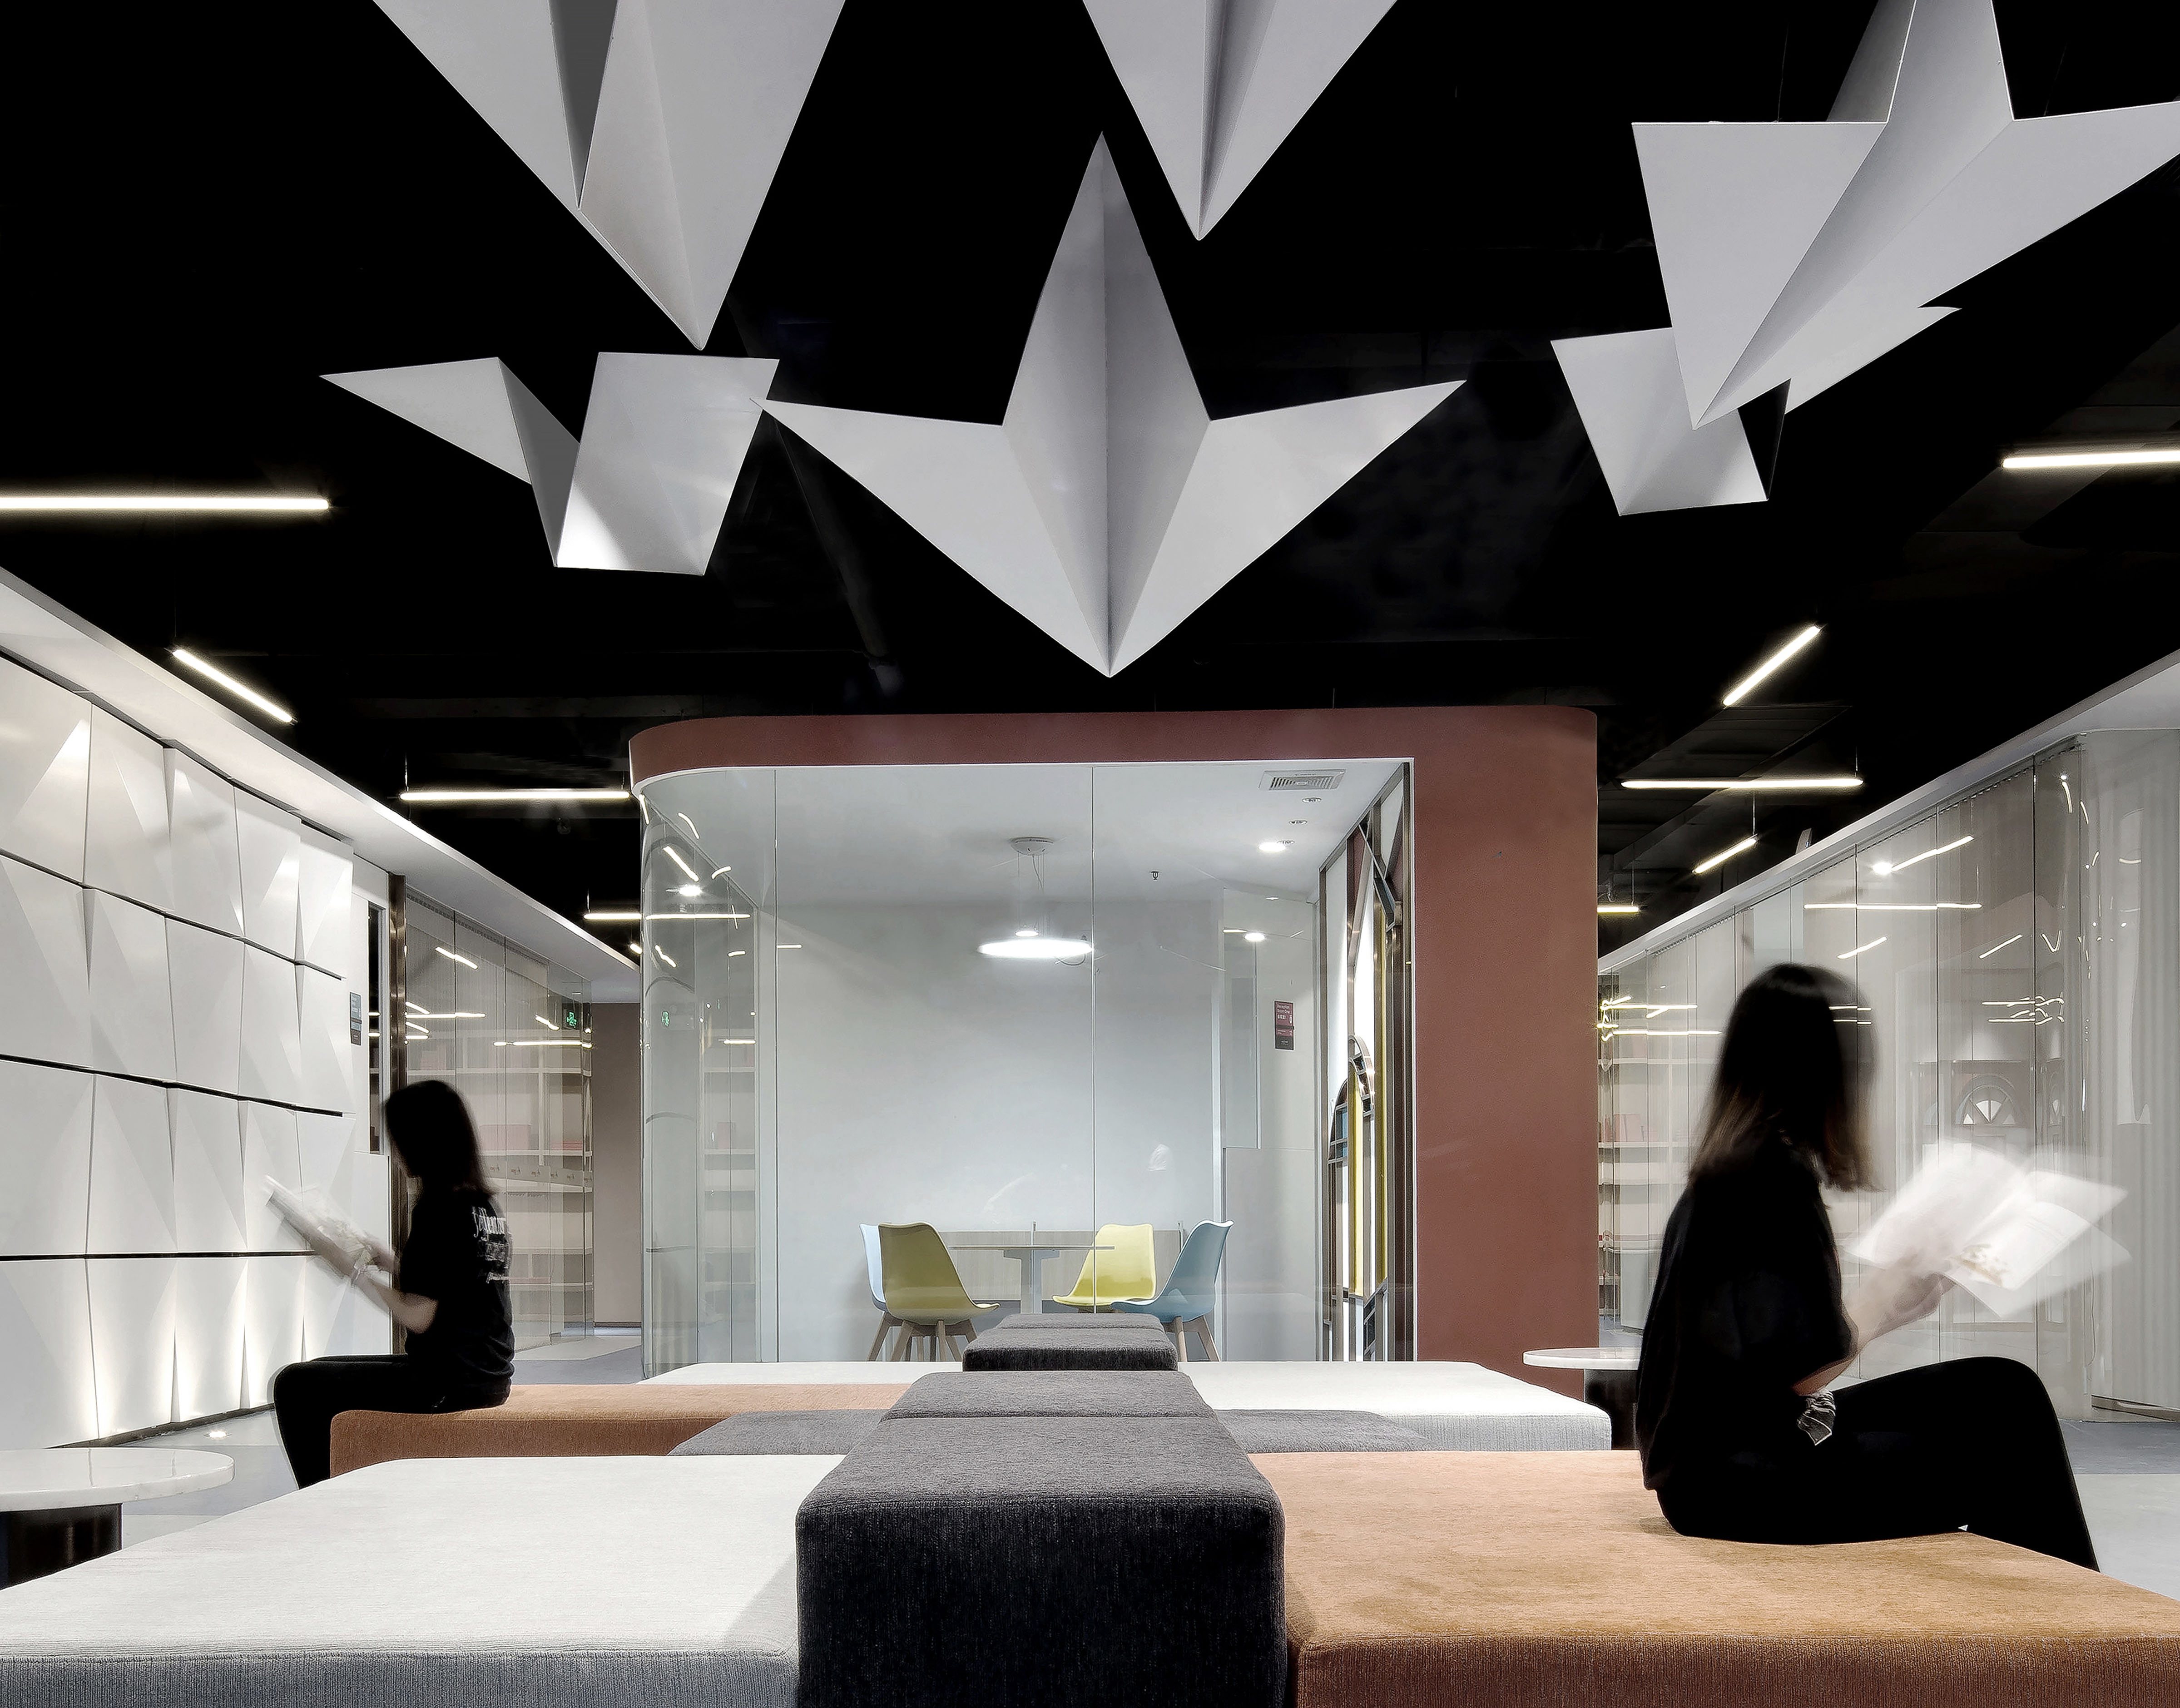 折纸·有着无限的随机性与创造性；
設計師用折紙藝術概念打造空間裝飾概念，形式不一的折面，呼吸而留白；
